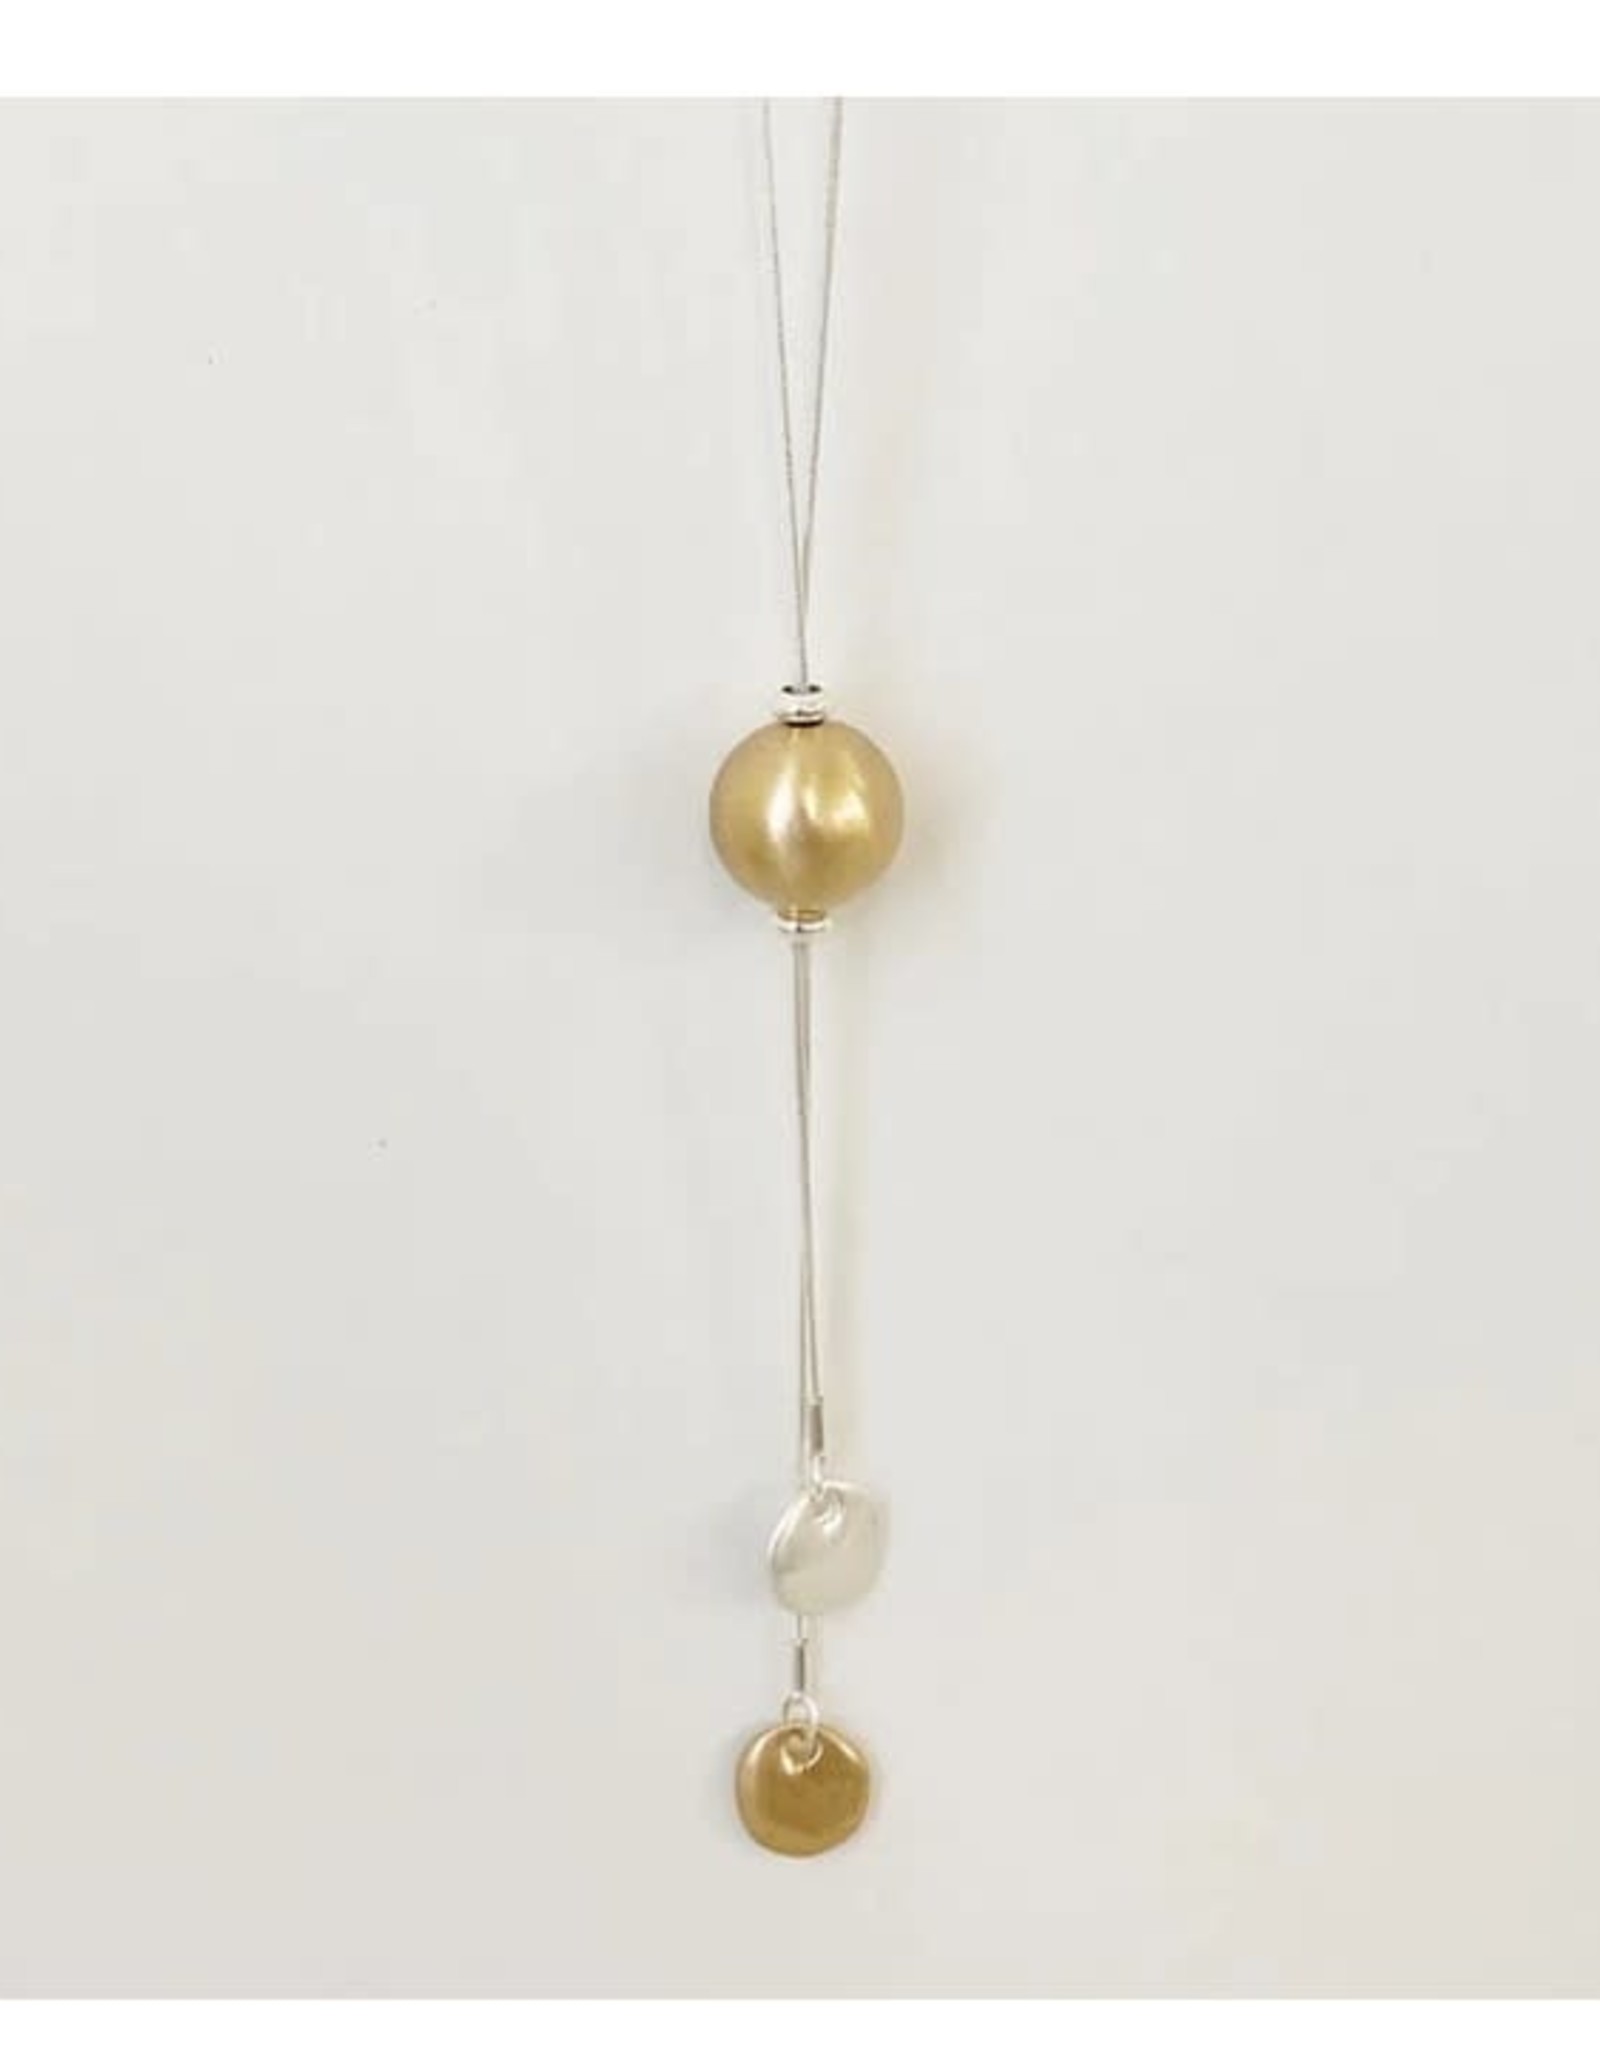 Caracol Long collier + boule  #1430  Doré